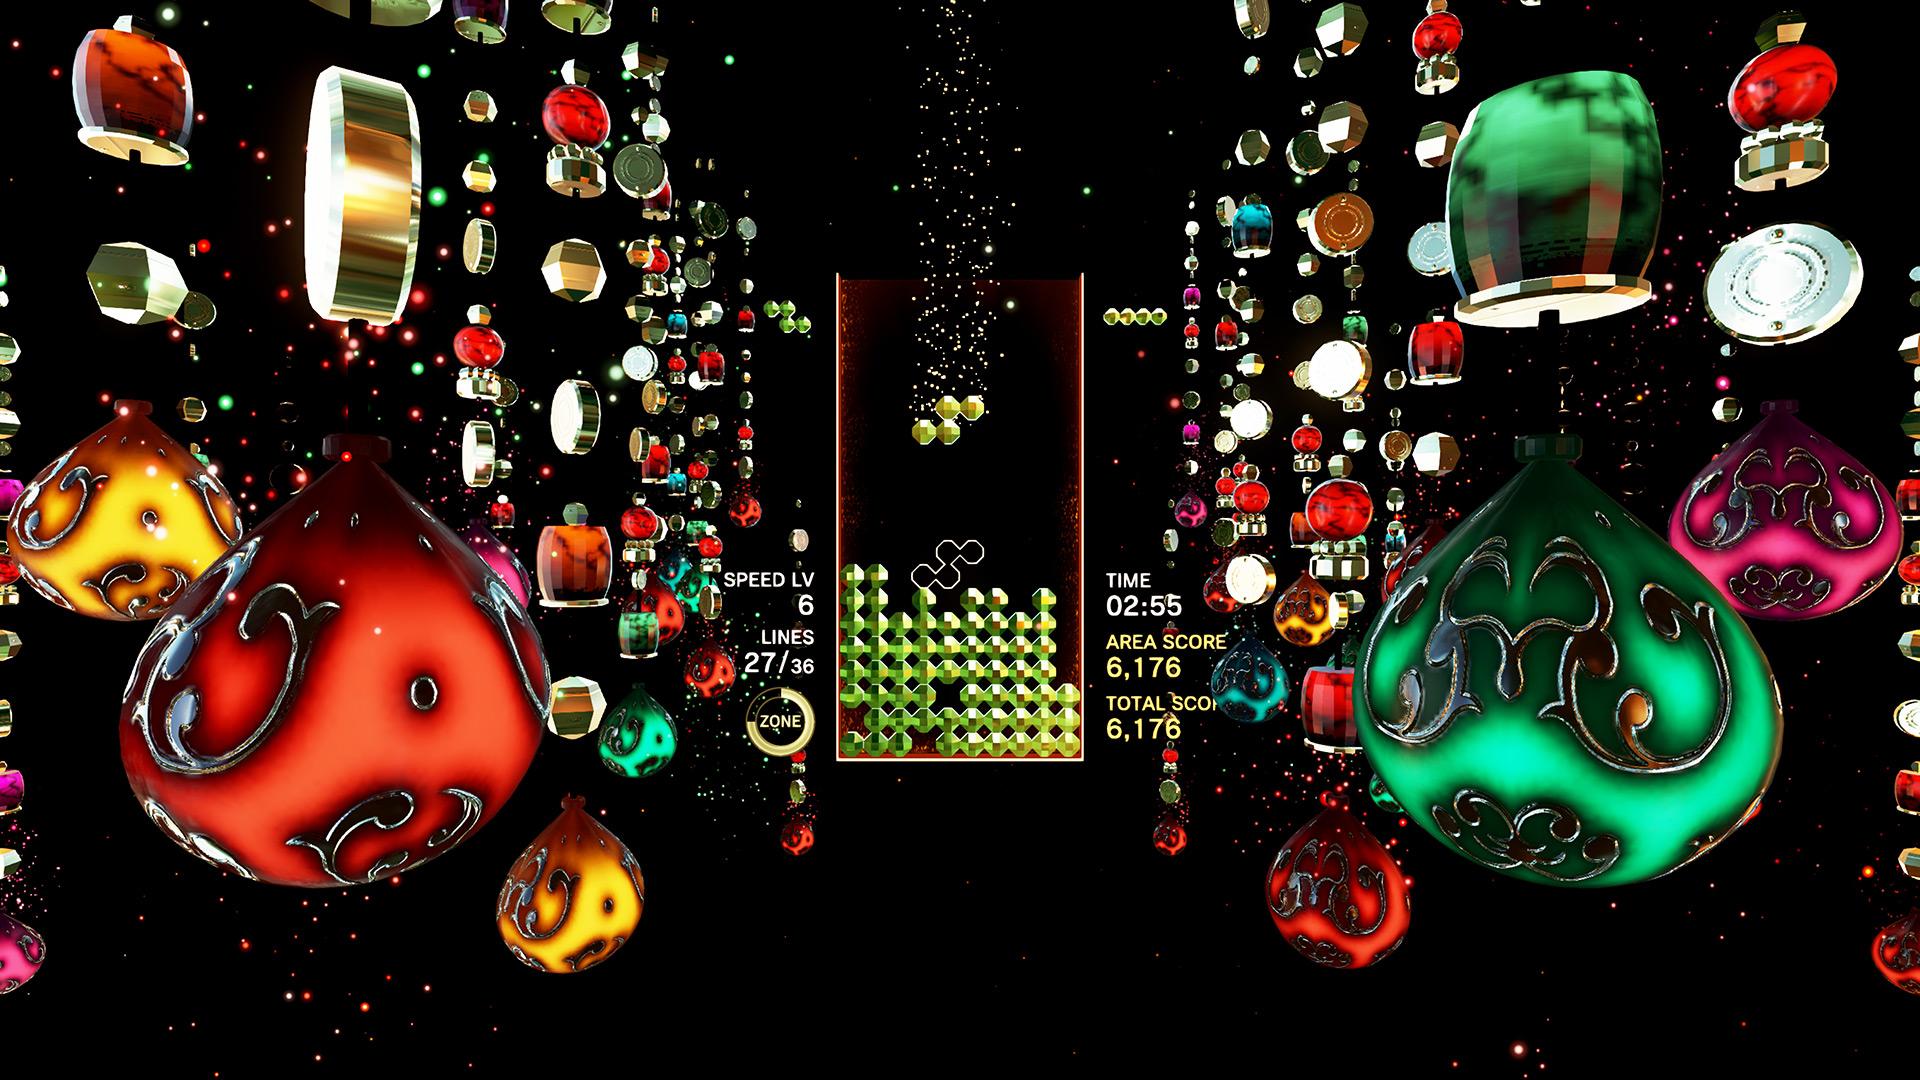 Tetris Effect Game Screenshot Wallpaper 67840 1920x1080px